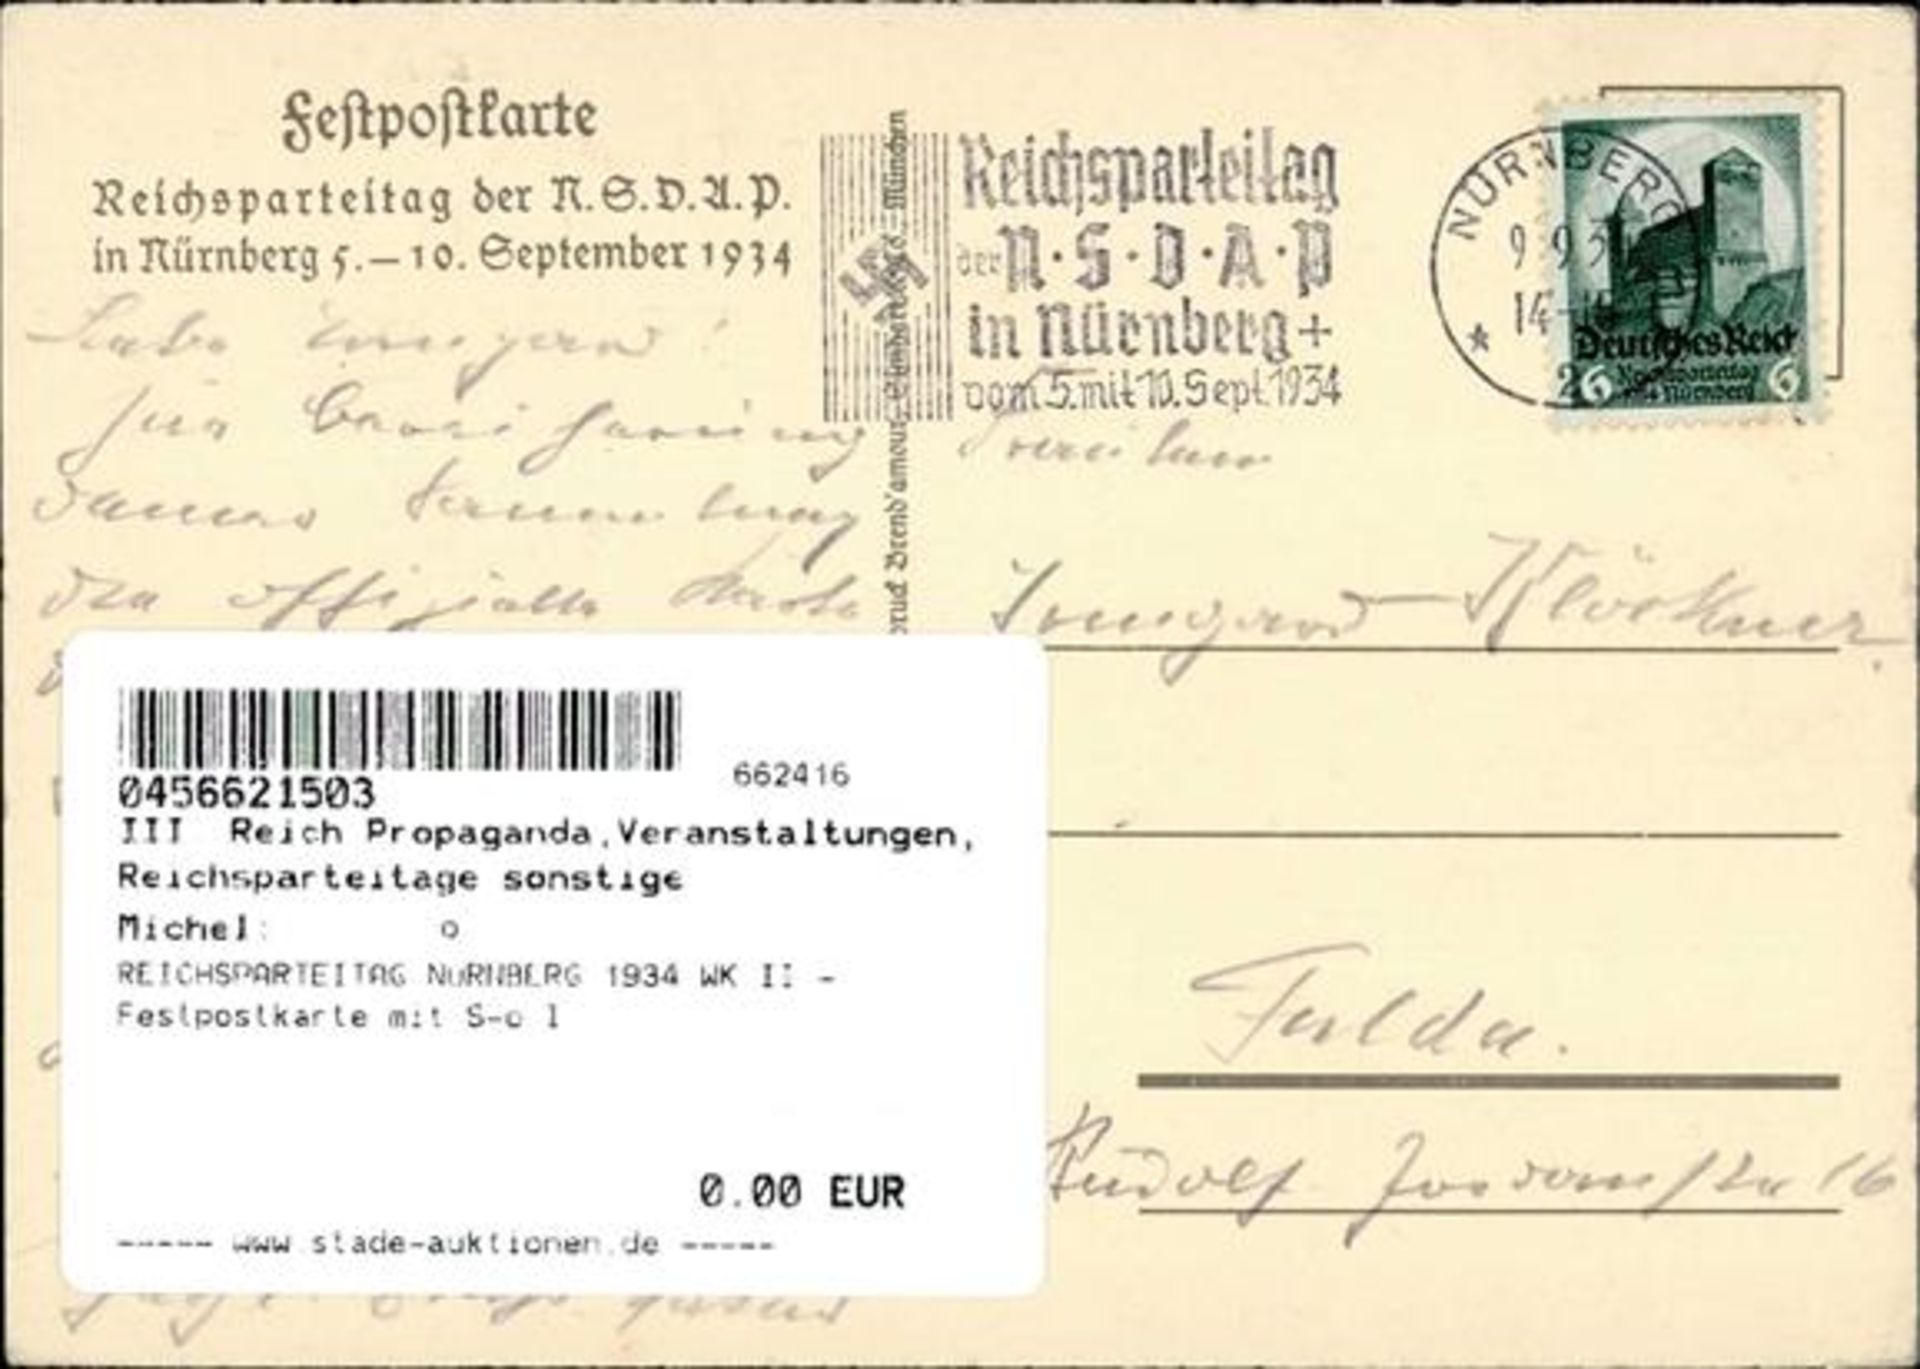 REICHSPARTEITAG NÜRNBERG 1934 WK II - Festpostkarte mit S-o I - Bild 2 aus 2